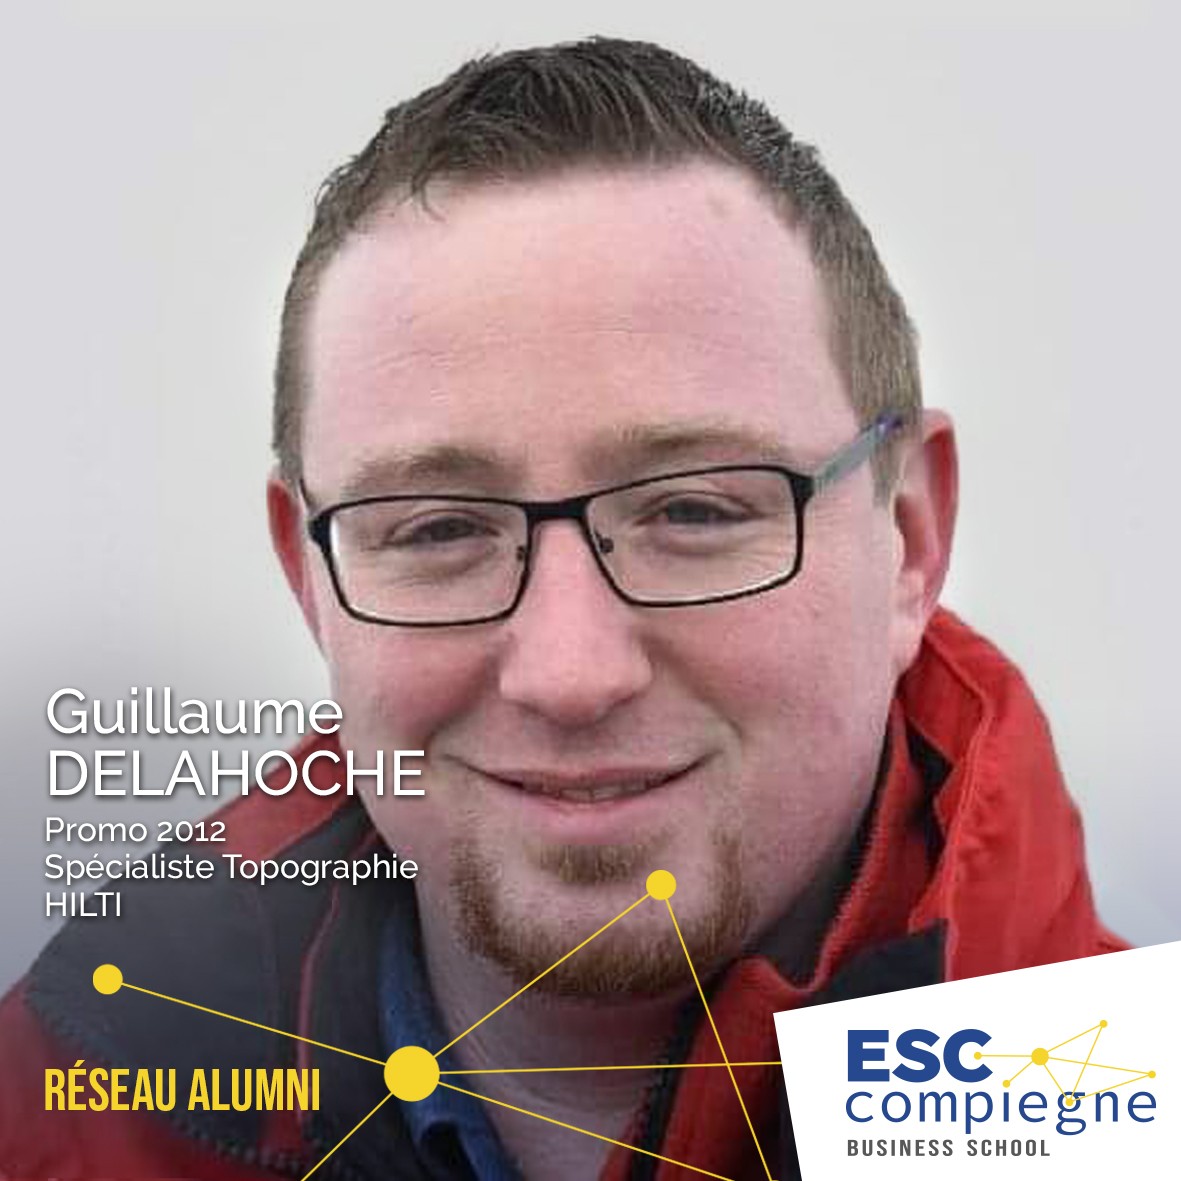 ESCC-Guillaume-Delahoche